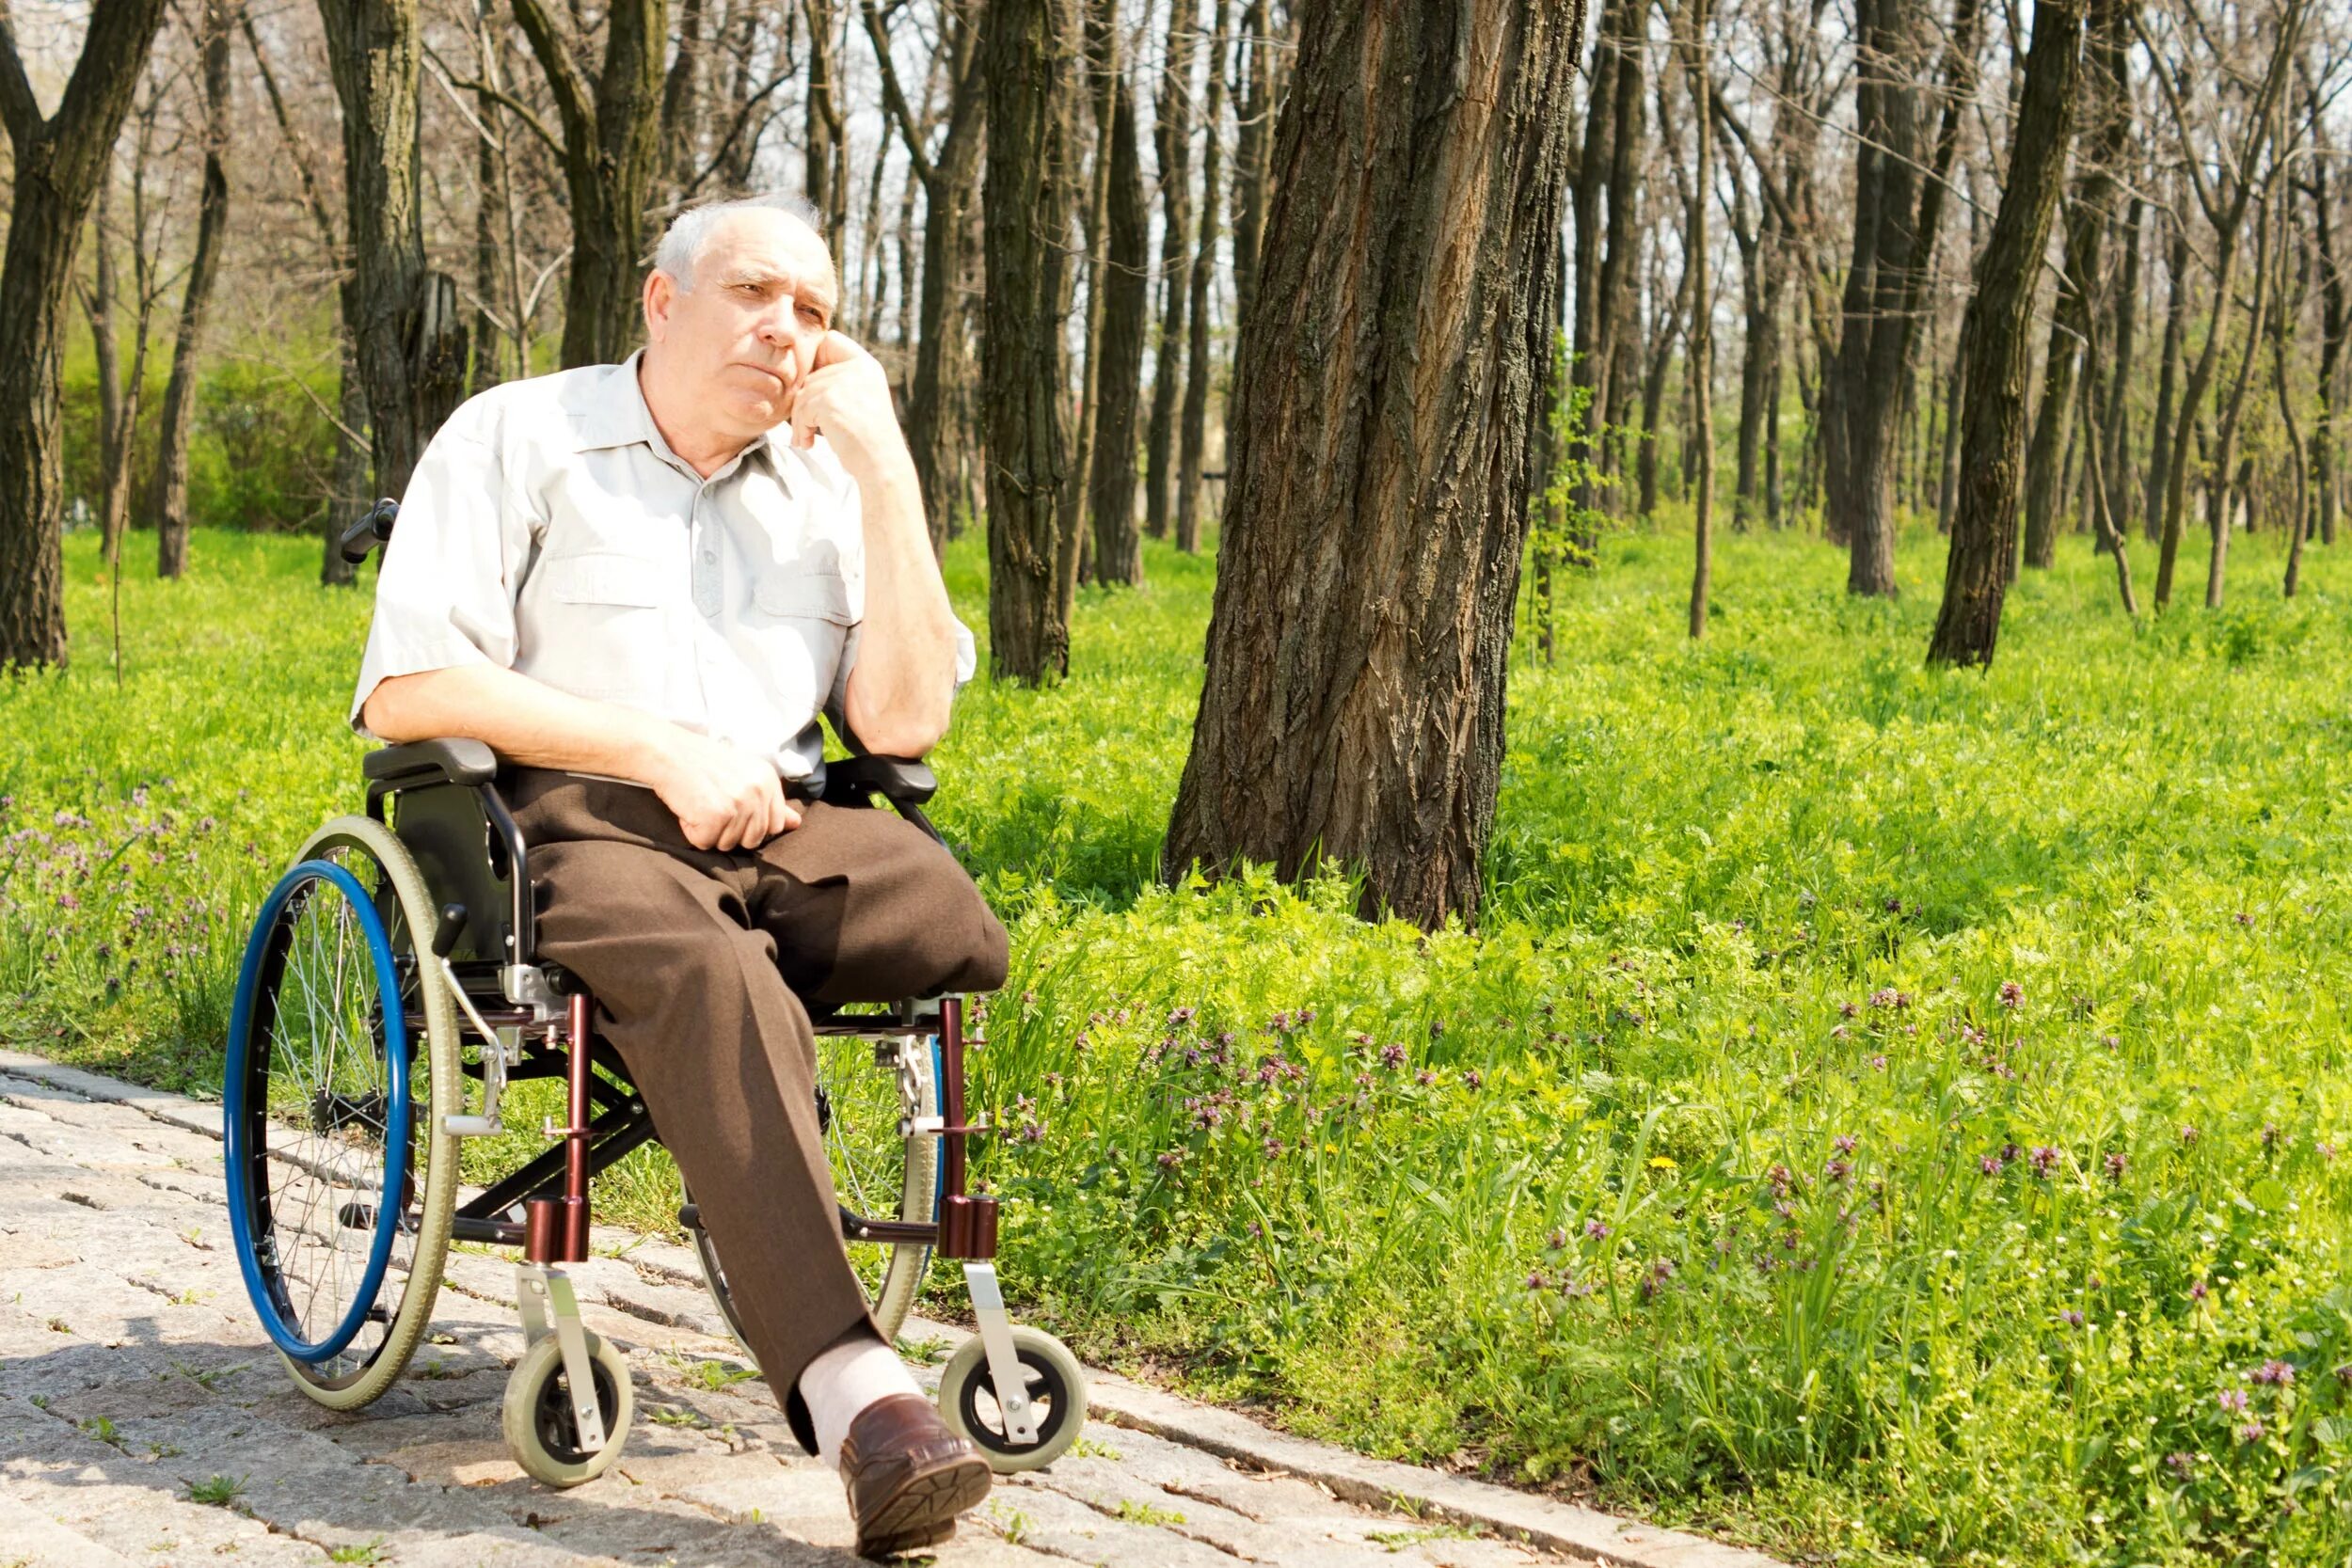 Дед на инвалидной коляске. Человек в инвалидной коляске. Пенсионер в инвалидном кресле. Старый инвалид. Мужчине дали инвалидность